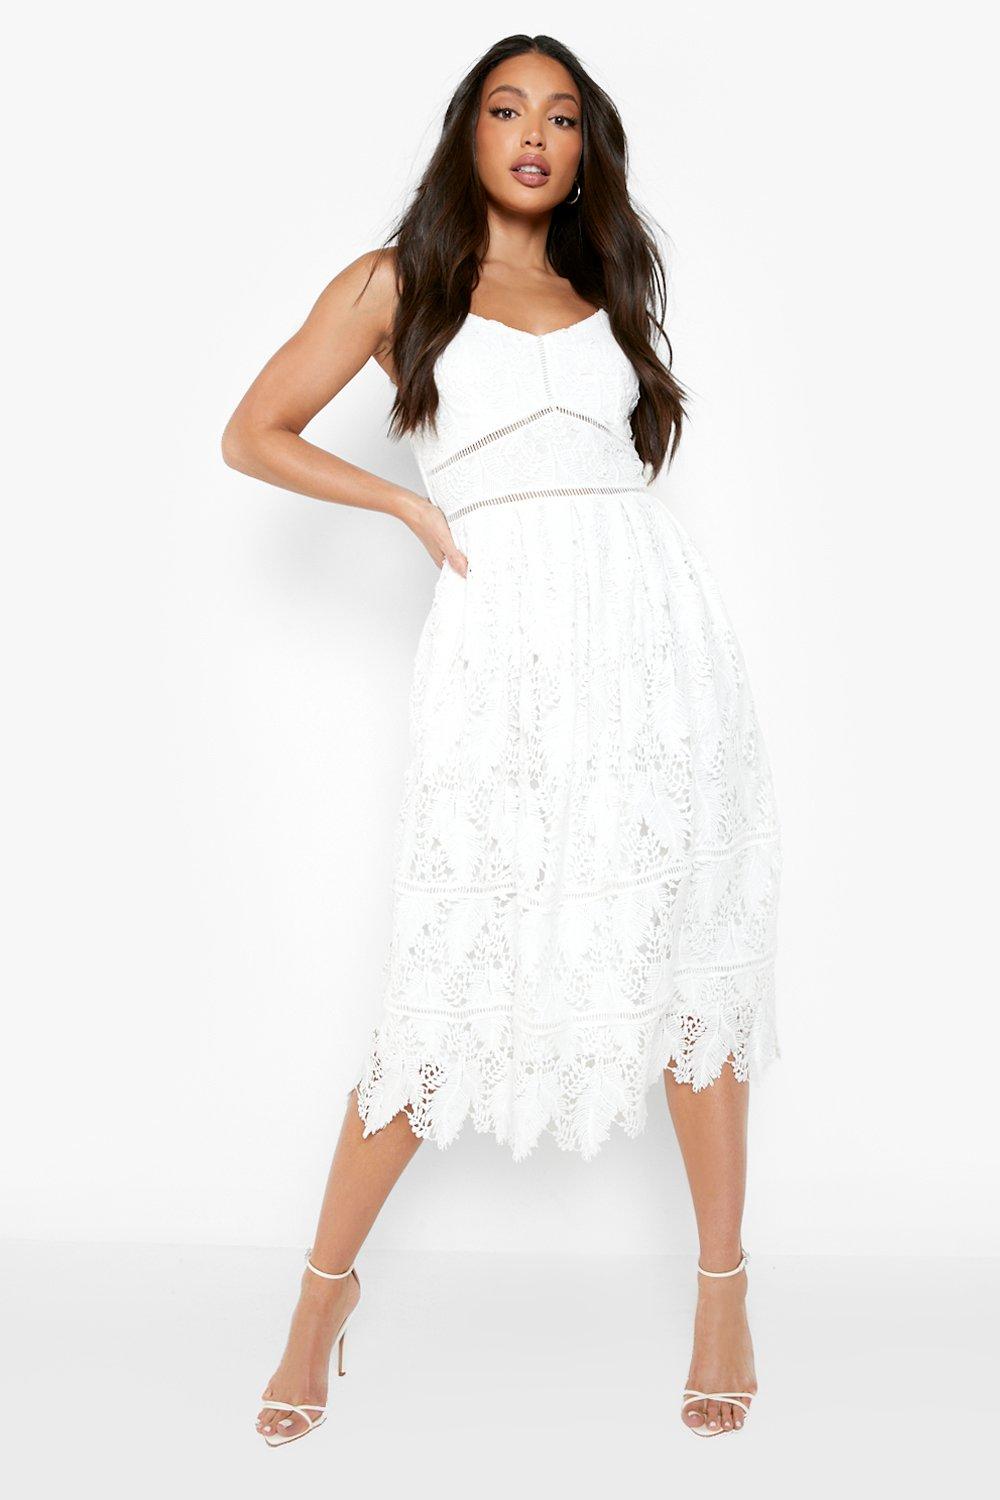 White Lace Dresses | Midi ☀ Short White ...